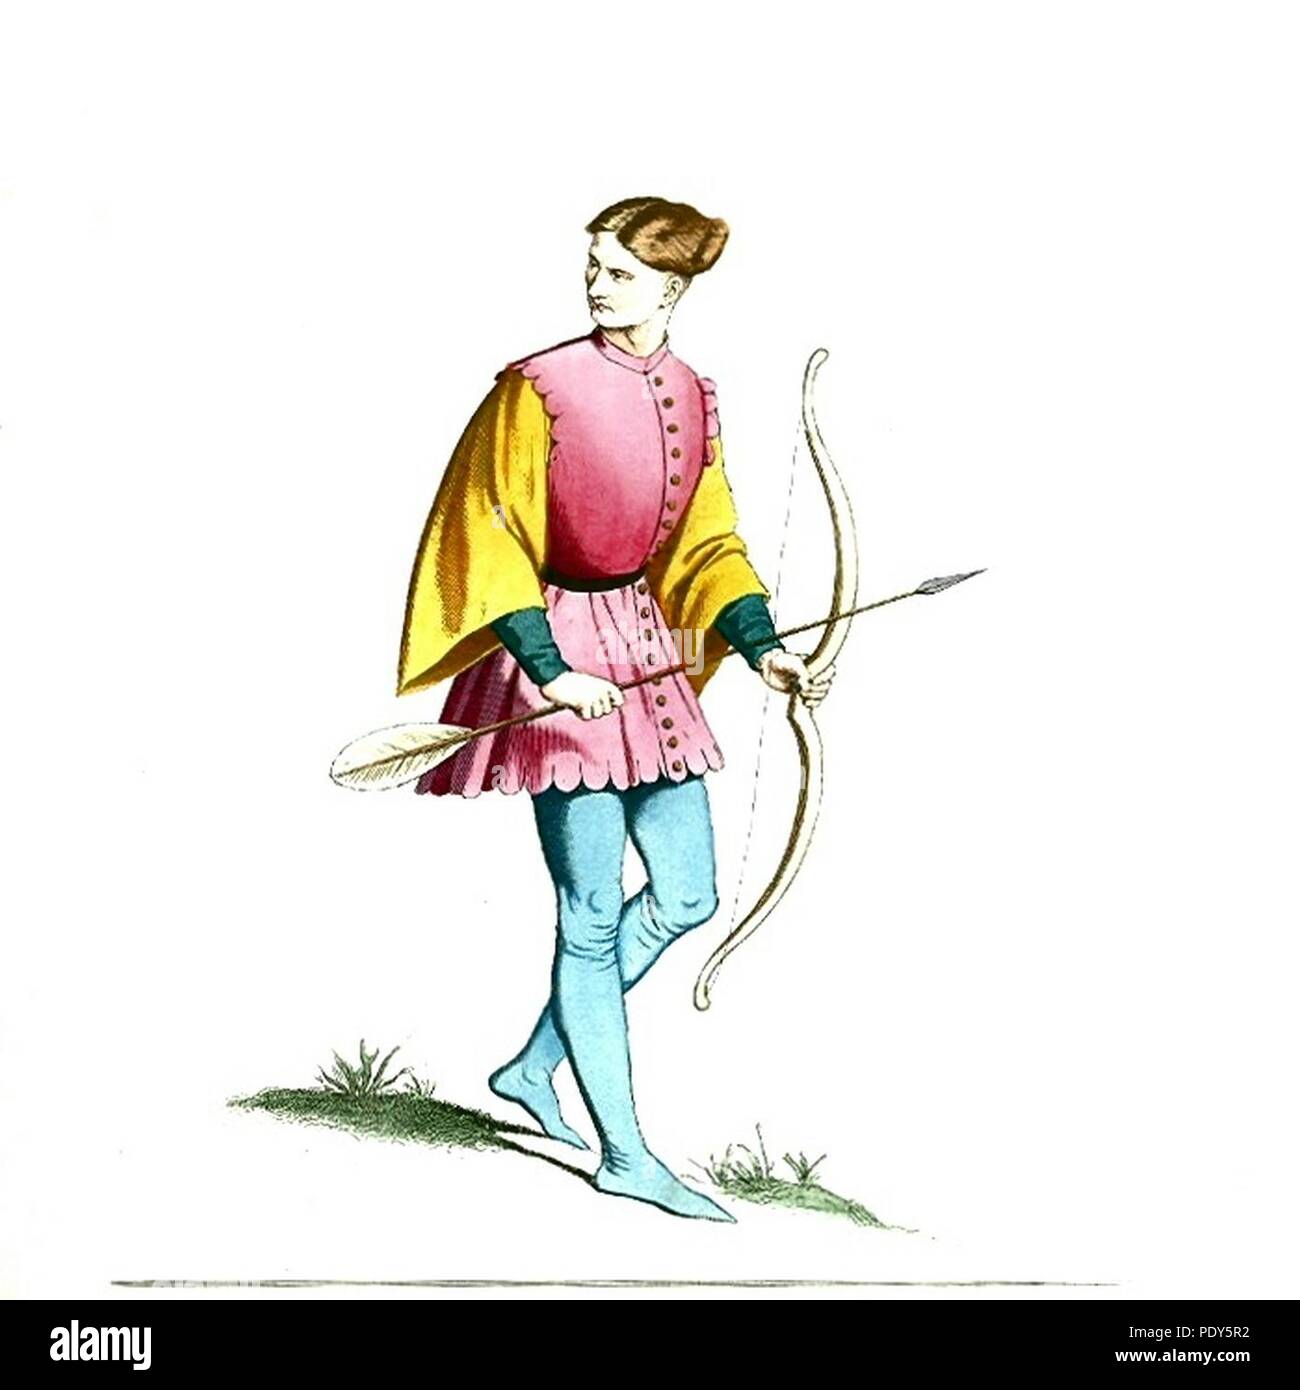 Volver promulgación inglés medieval largo arco y flecha disfraz del siglo  xiv historia histórica bowman archer arco Fotografía de stock - Alamy